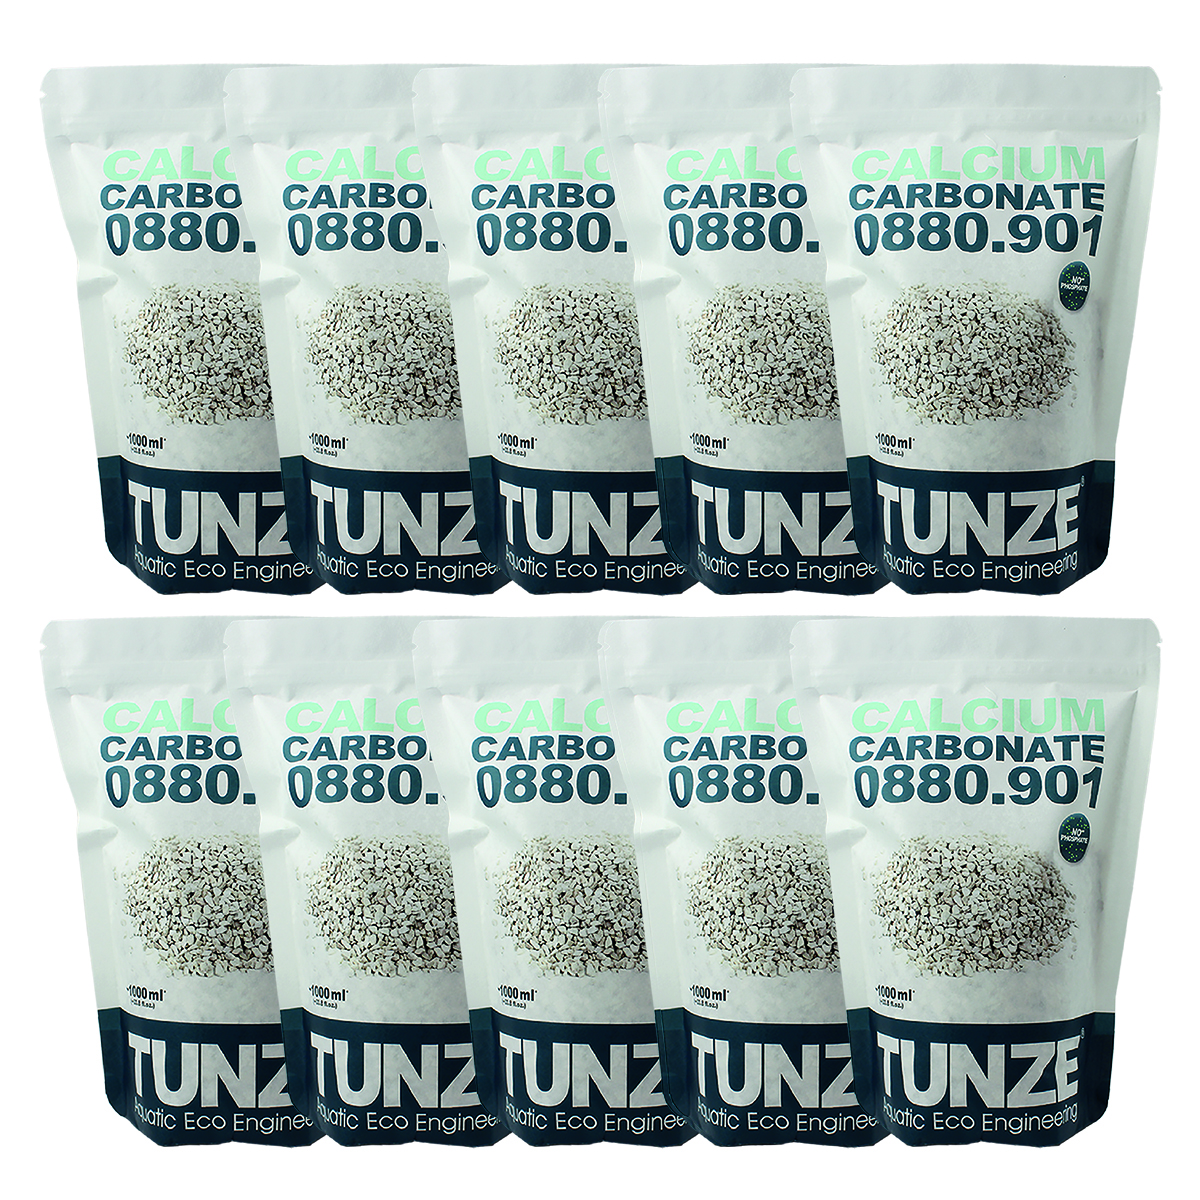 Calcium carbonate - Tunze